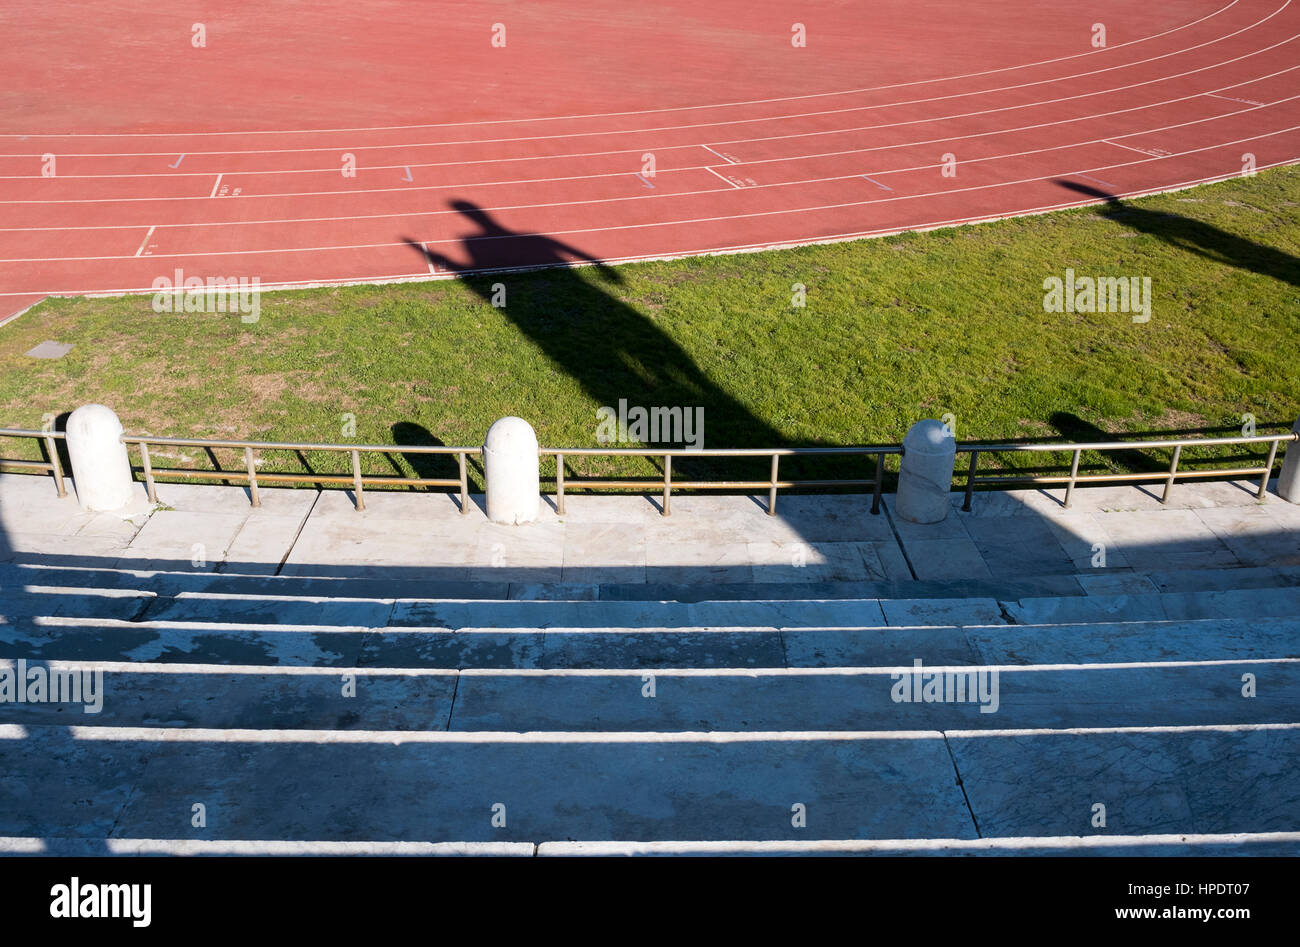 Stadio dei Marmi, Foro Italico. Rome, Italy Stock Photo